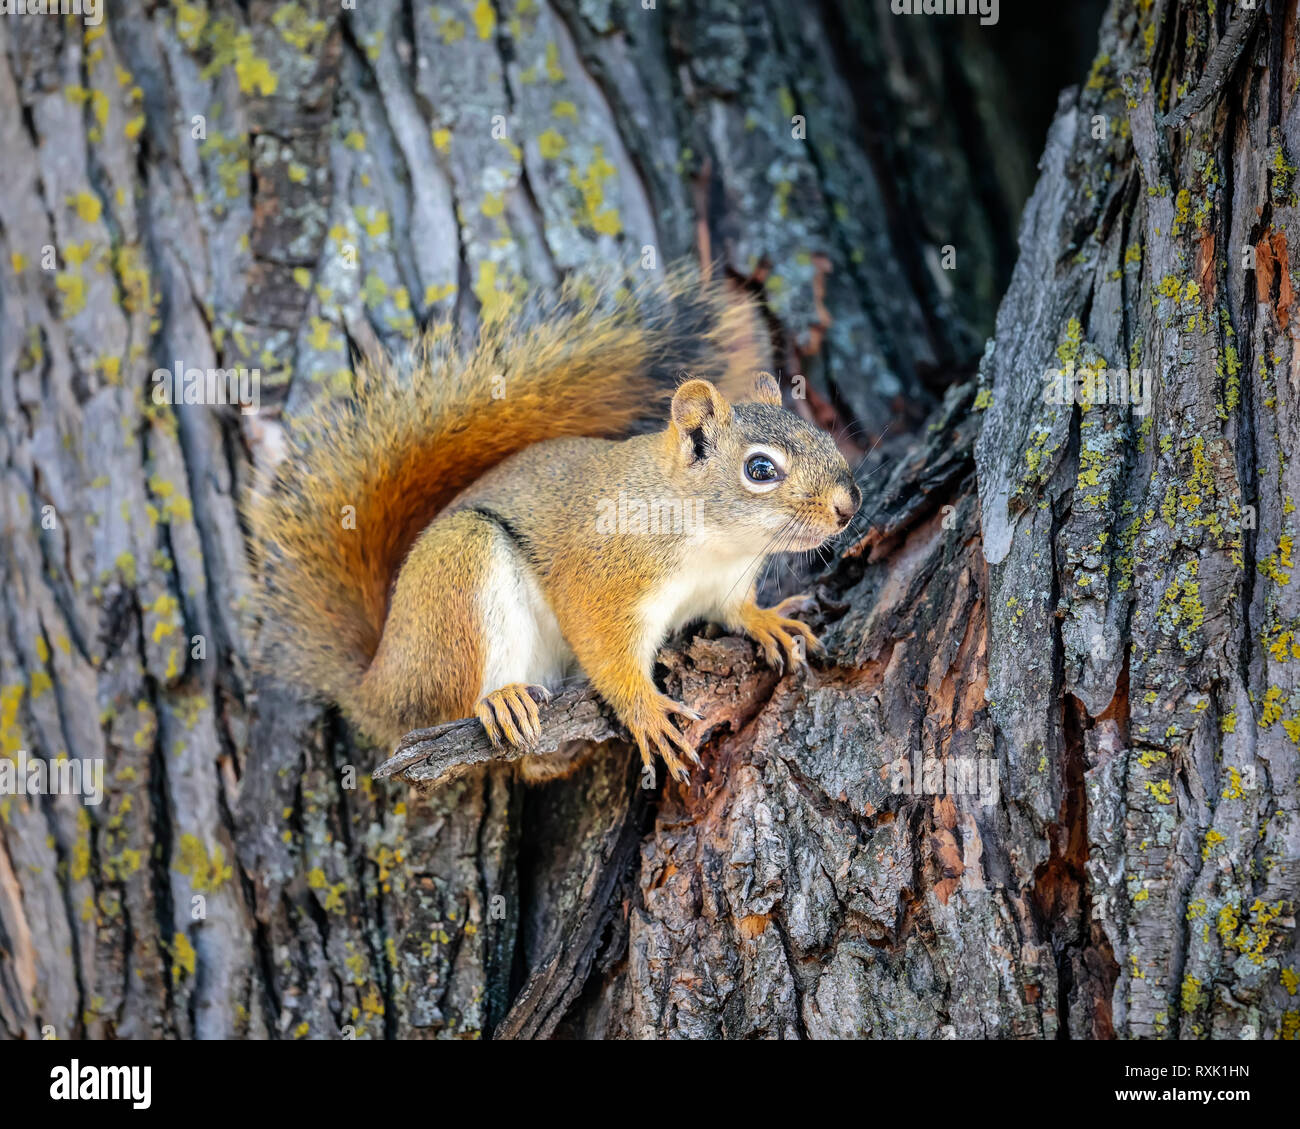 American Red Squirrel on a tree, (Tamiasciurus hudsonicus), Manitoba, Canada Stock Photo